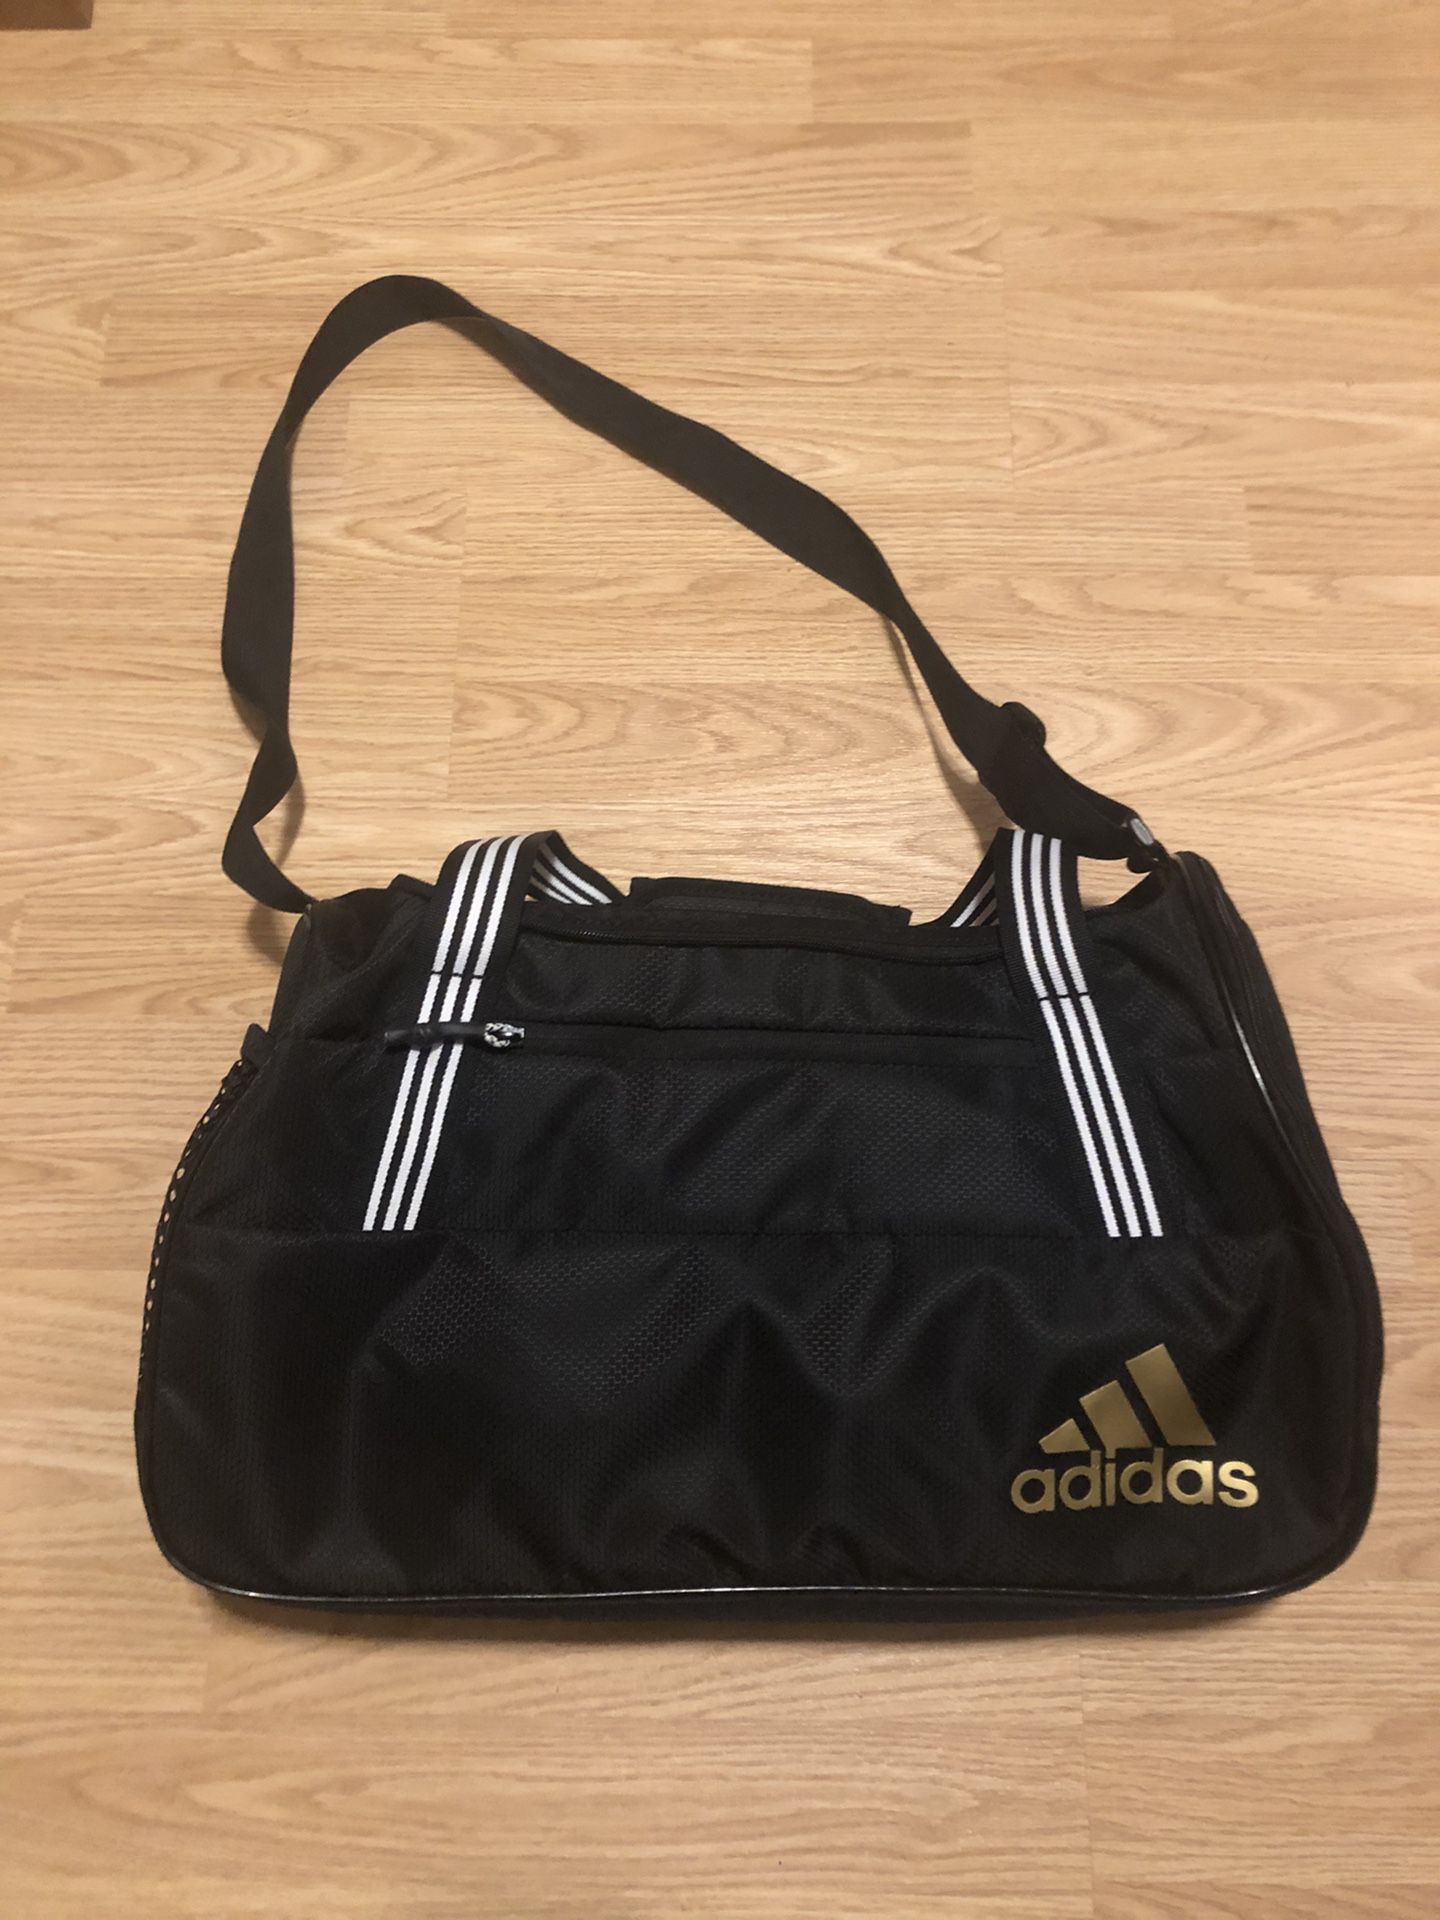 New Black Adidas Squad IV Duffle Bag 